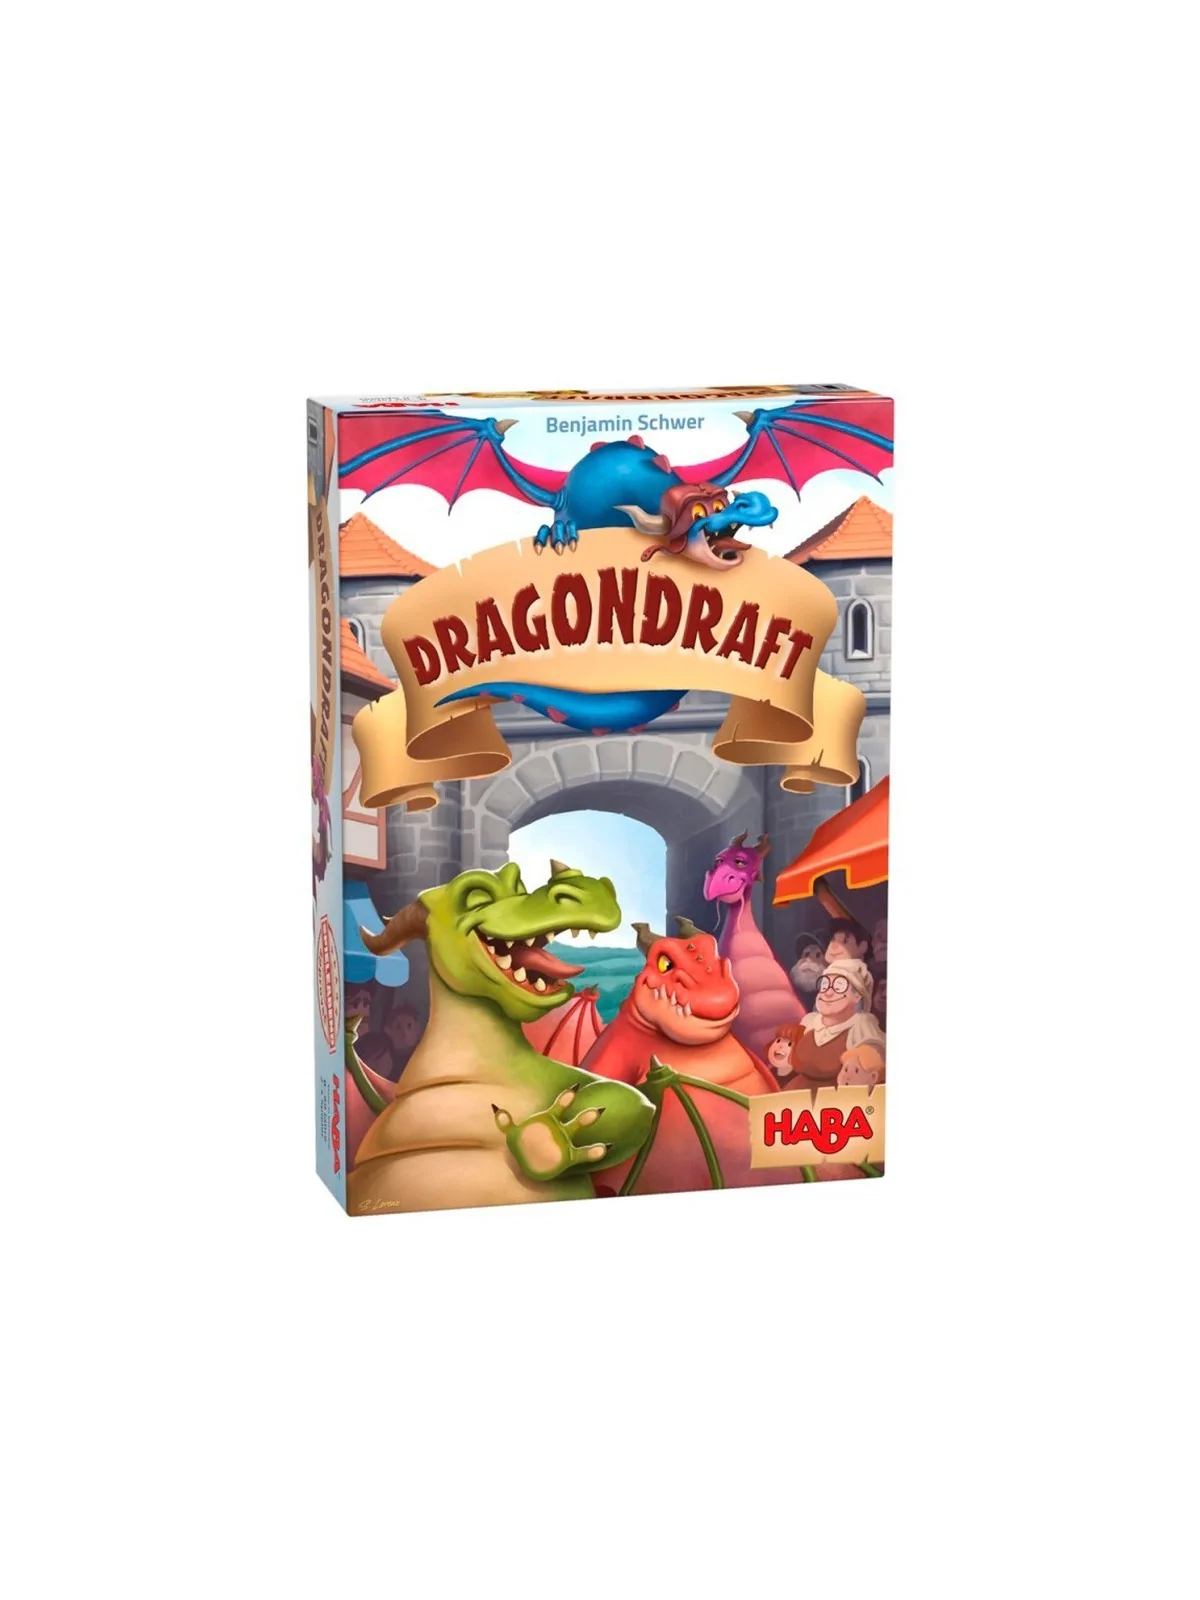 Comprar Dragondraft barato al mejor precio 22,49 € de Haba